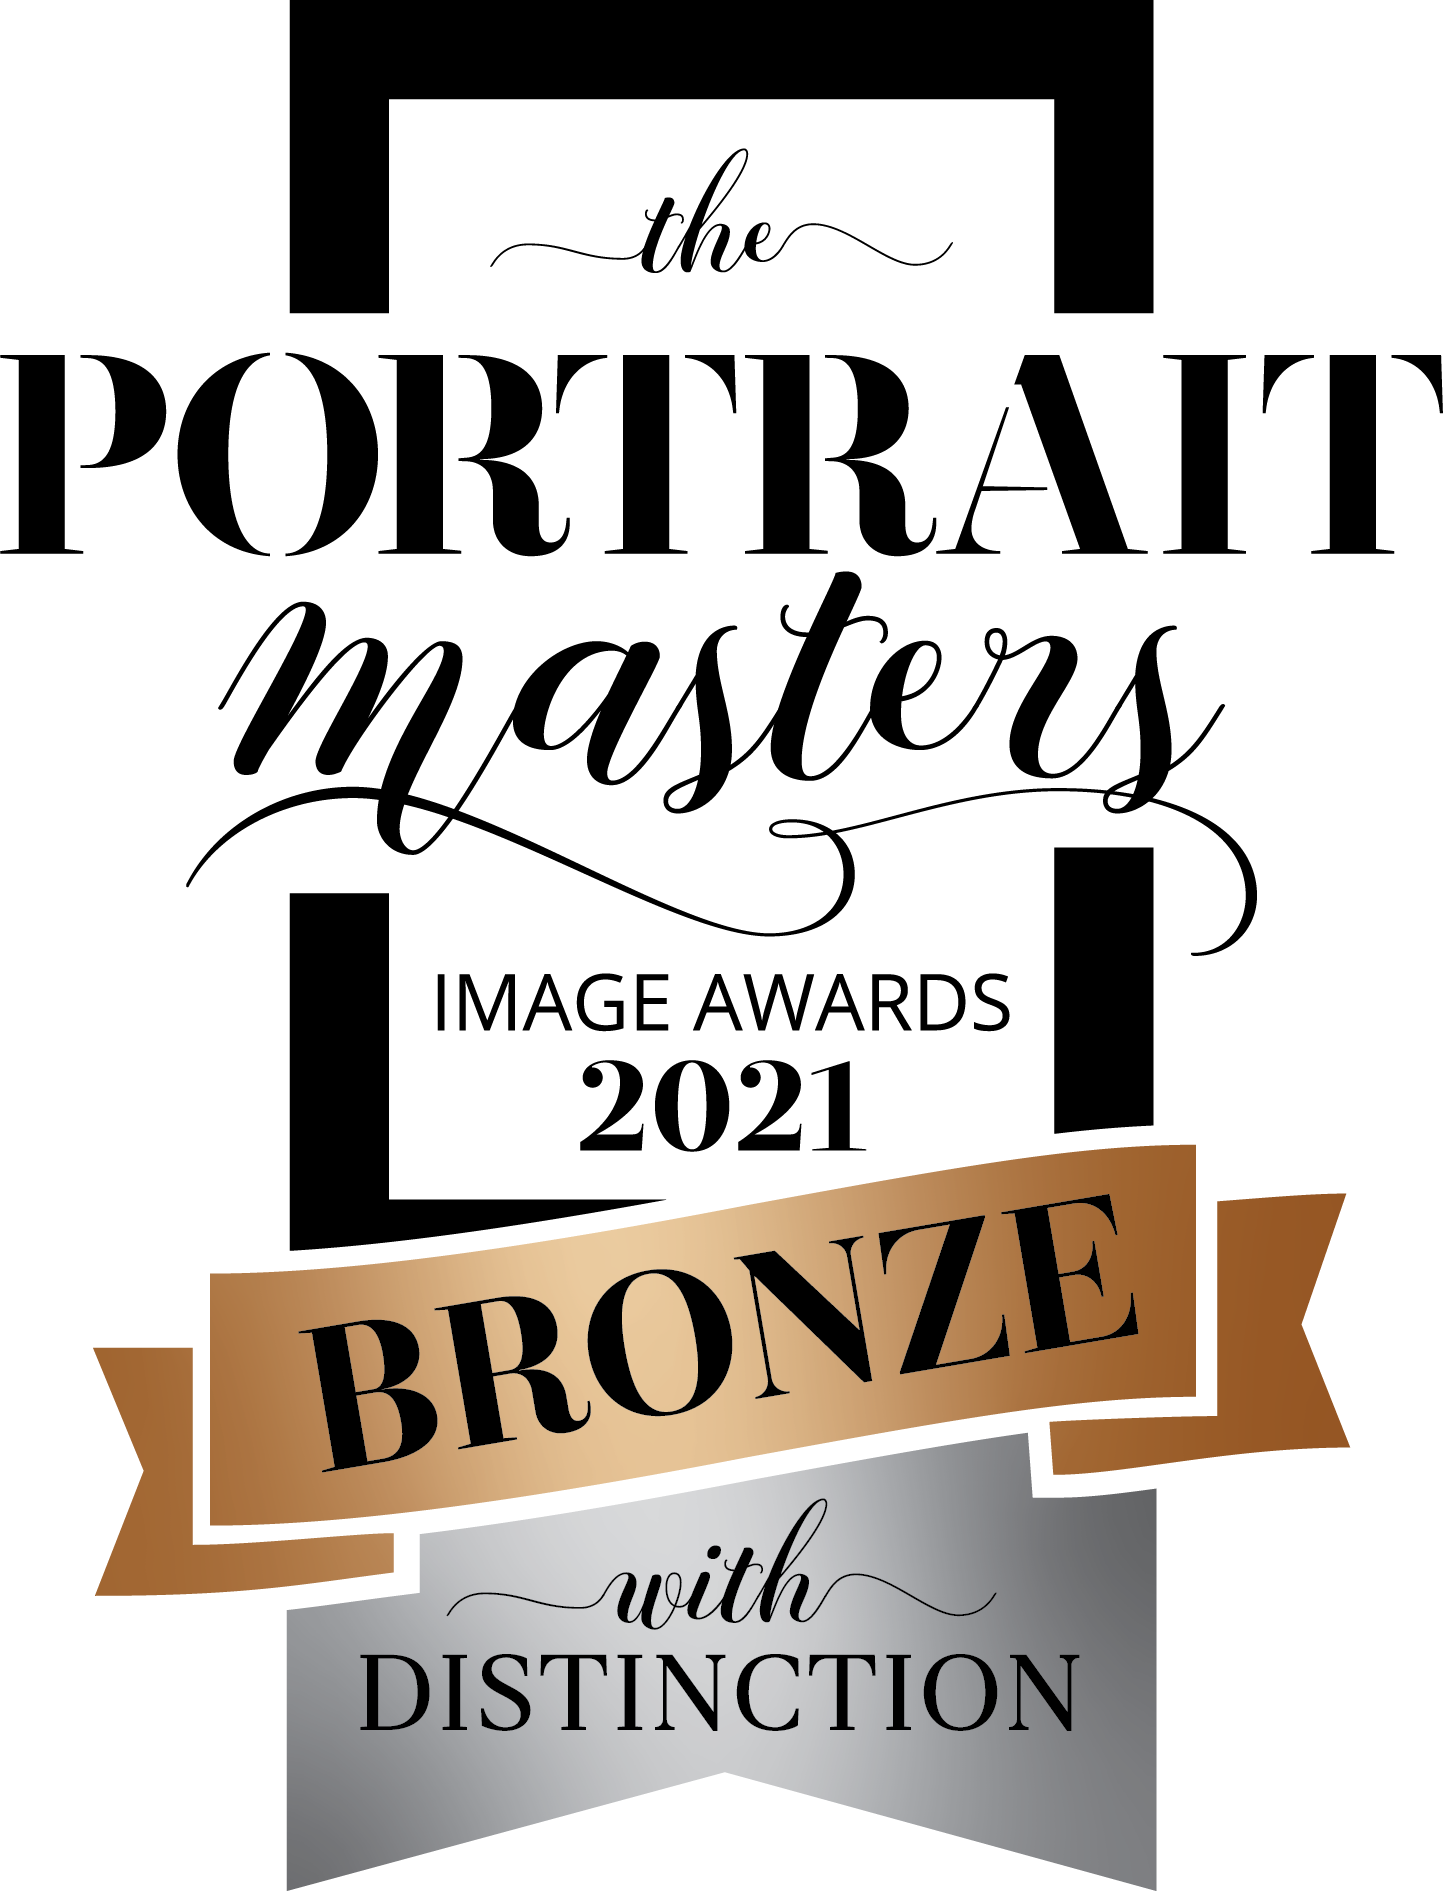 BRONZE - TPM 2021 Image Award Distinction (blk).png